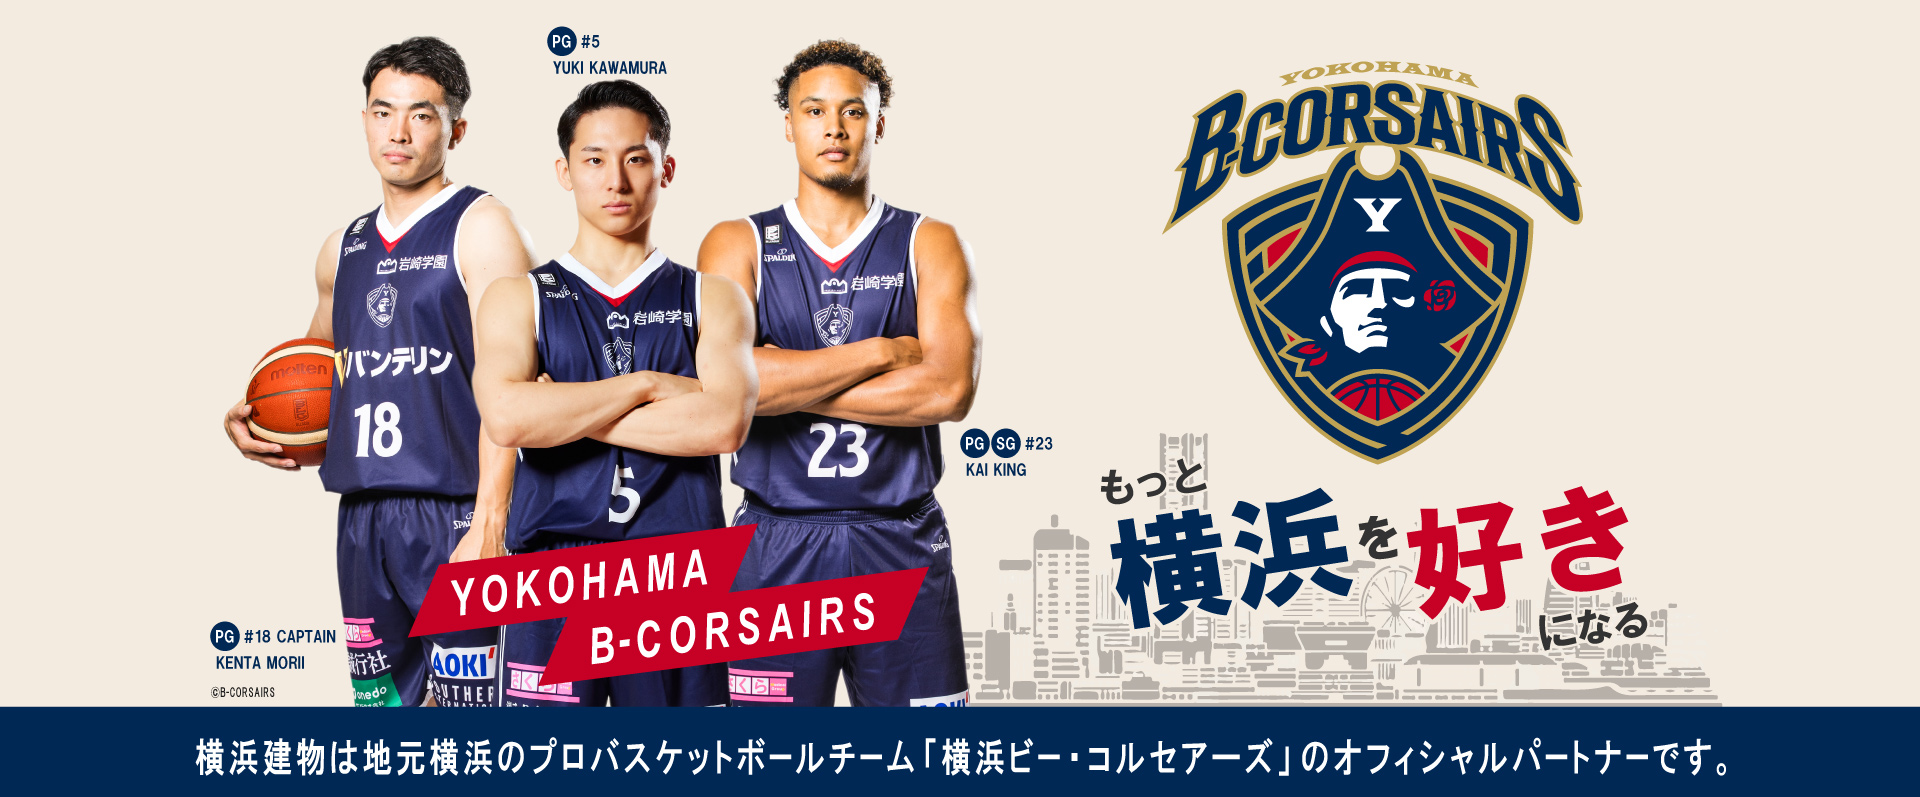 横浜建物は地元横浜のプロバスケットボールチーム「横浜ビー・コルセアーズ」のオフィシャルパートナーです。